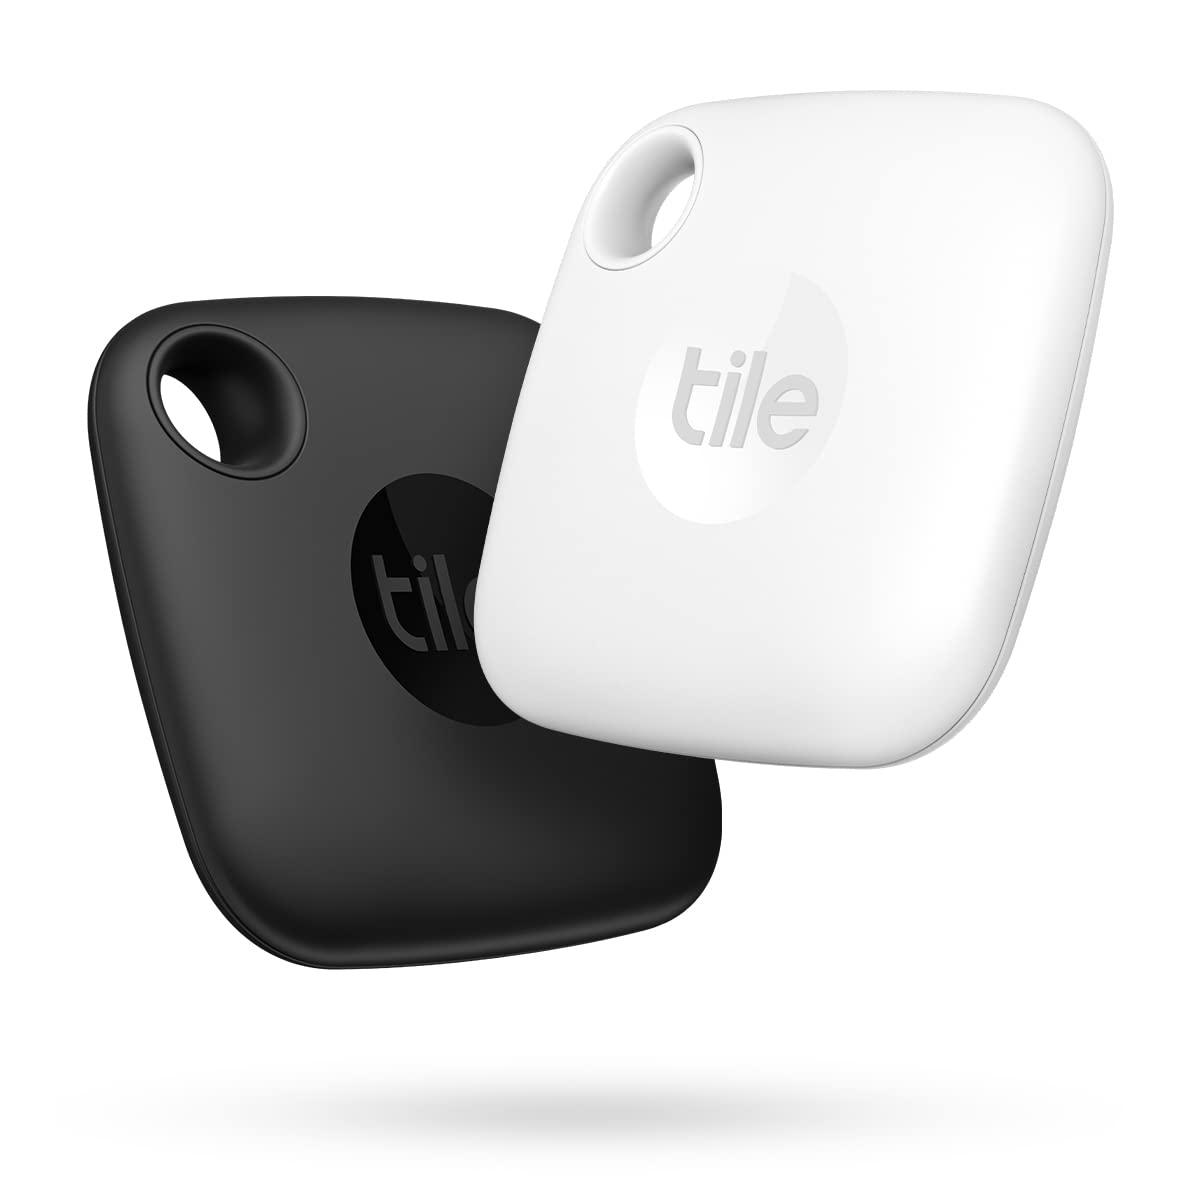 Tile Mate (2022) Bluetooth Schlüsselfinder, 2er Pack, 60m Reichweite, inkl. Community Suchfunktion, iOS & Android App, Alexa & Google Home kompatibel, Weiß/Schwarz